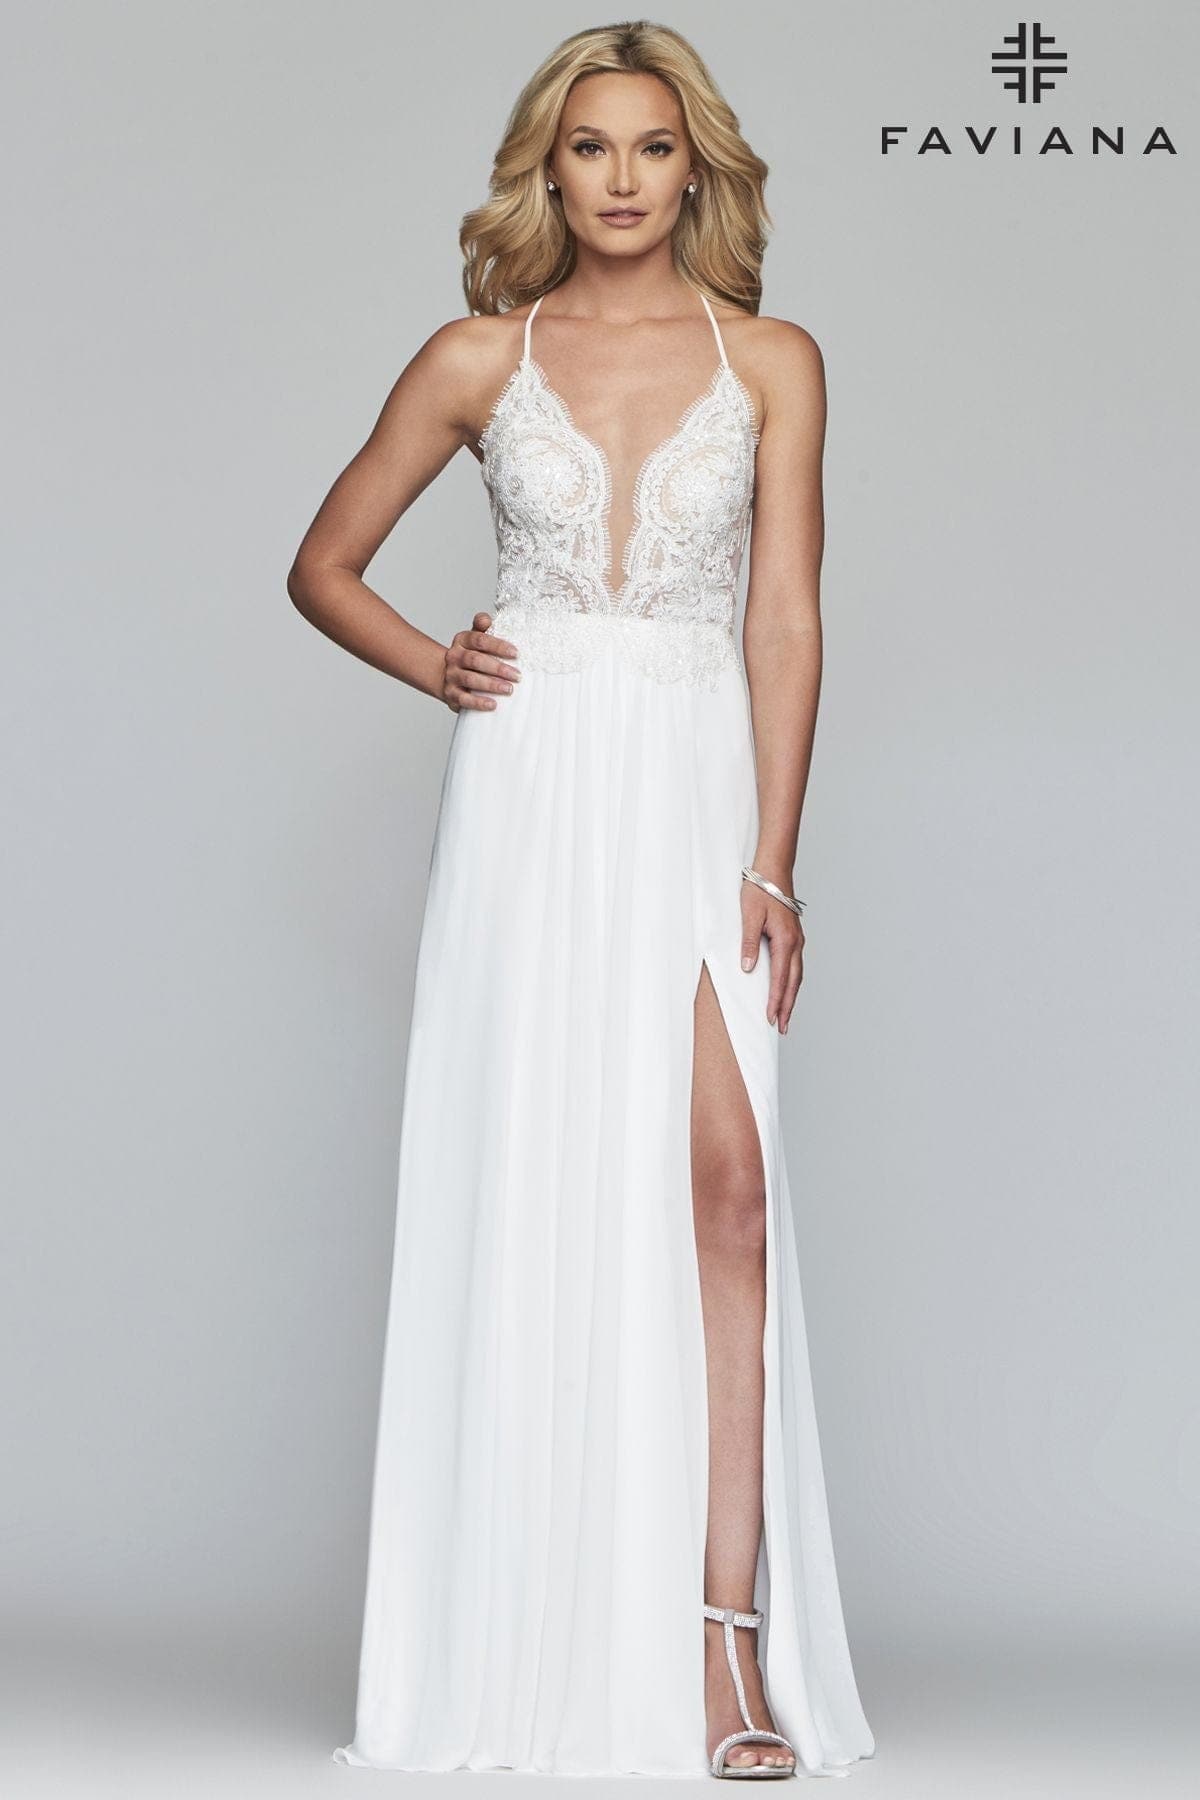 Faviana Prom Dresses Toronto, Wedding Dresses & Gowns, Amanda Linas Faviana  S10500 Wedding Dresses & Bridal Boutique Toronto